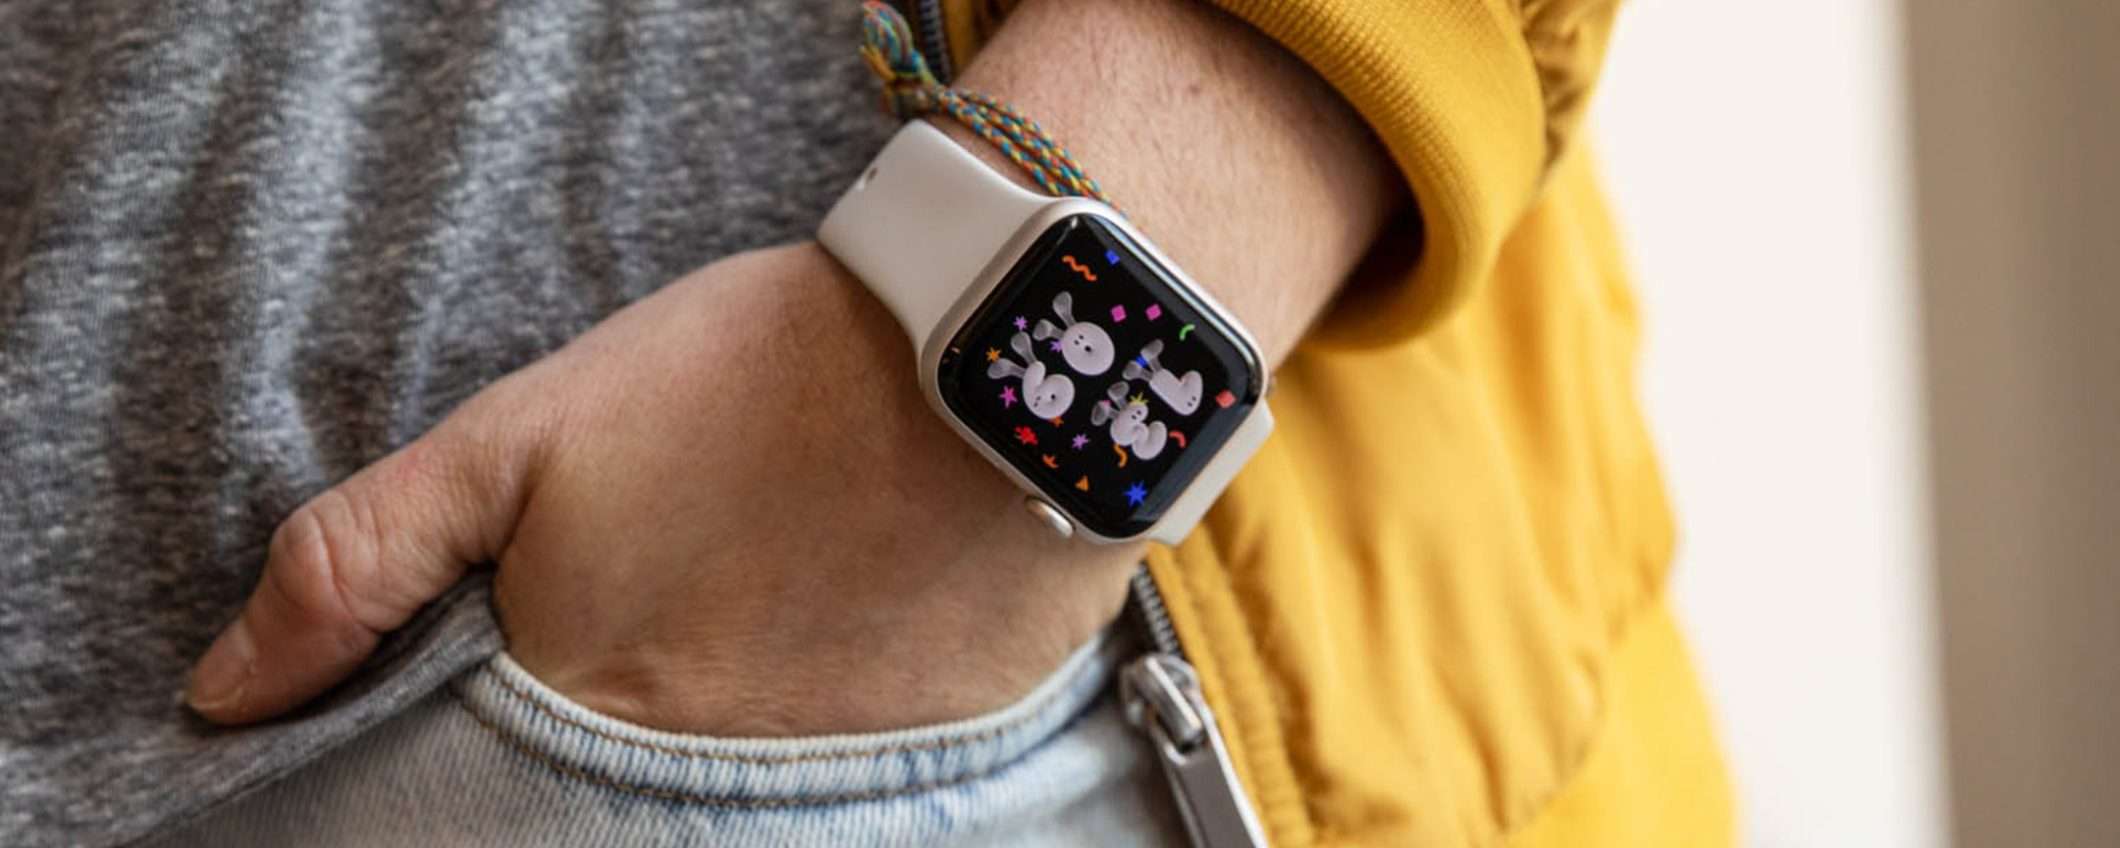 Apple Watch SE 2 a 289 euro: ha ancora senso nel 2023?